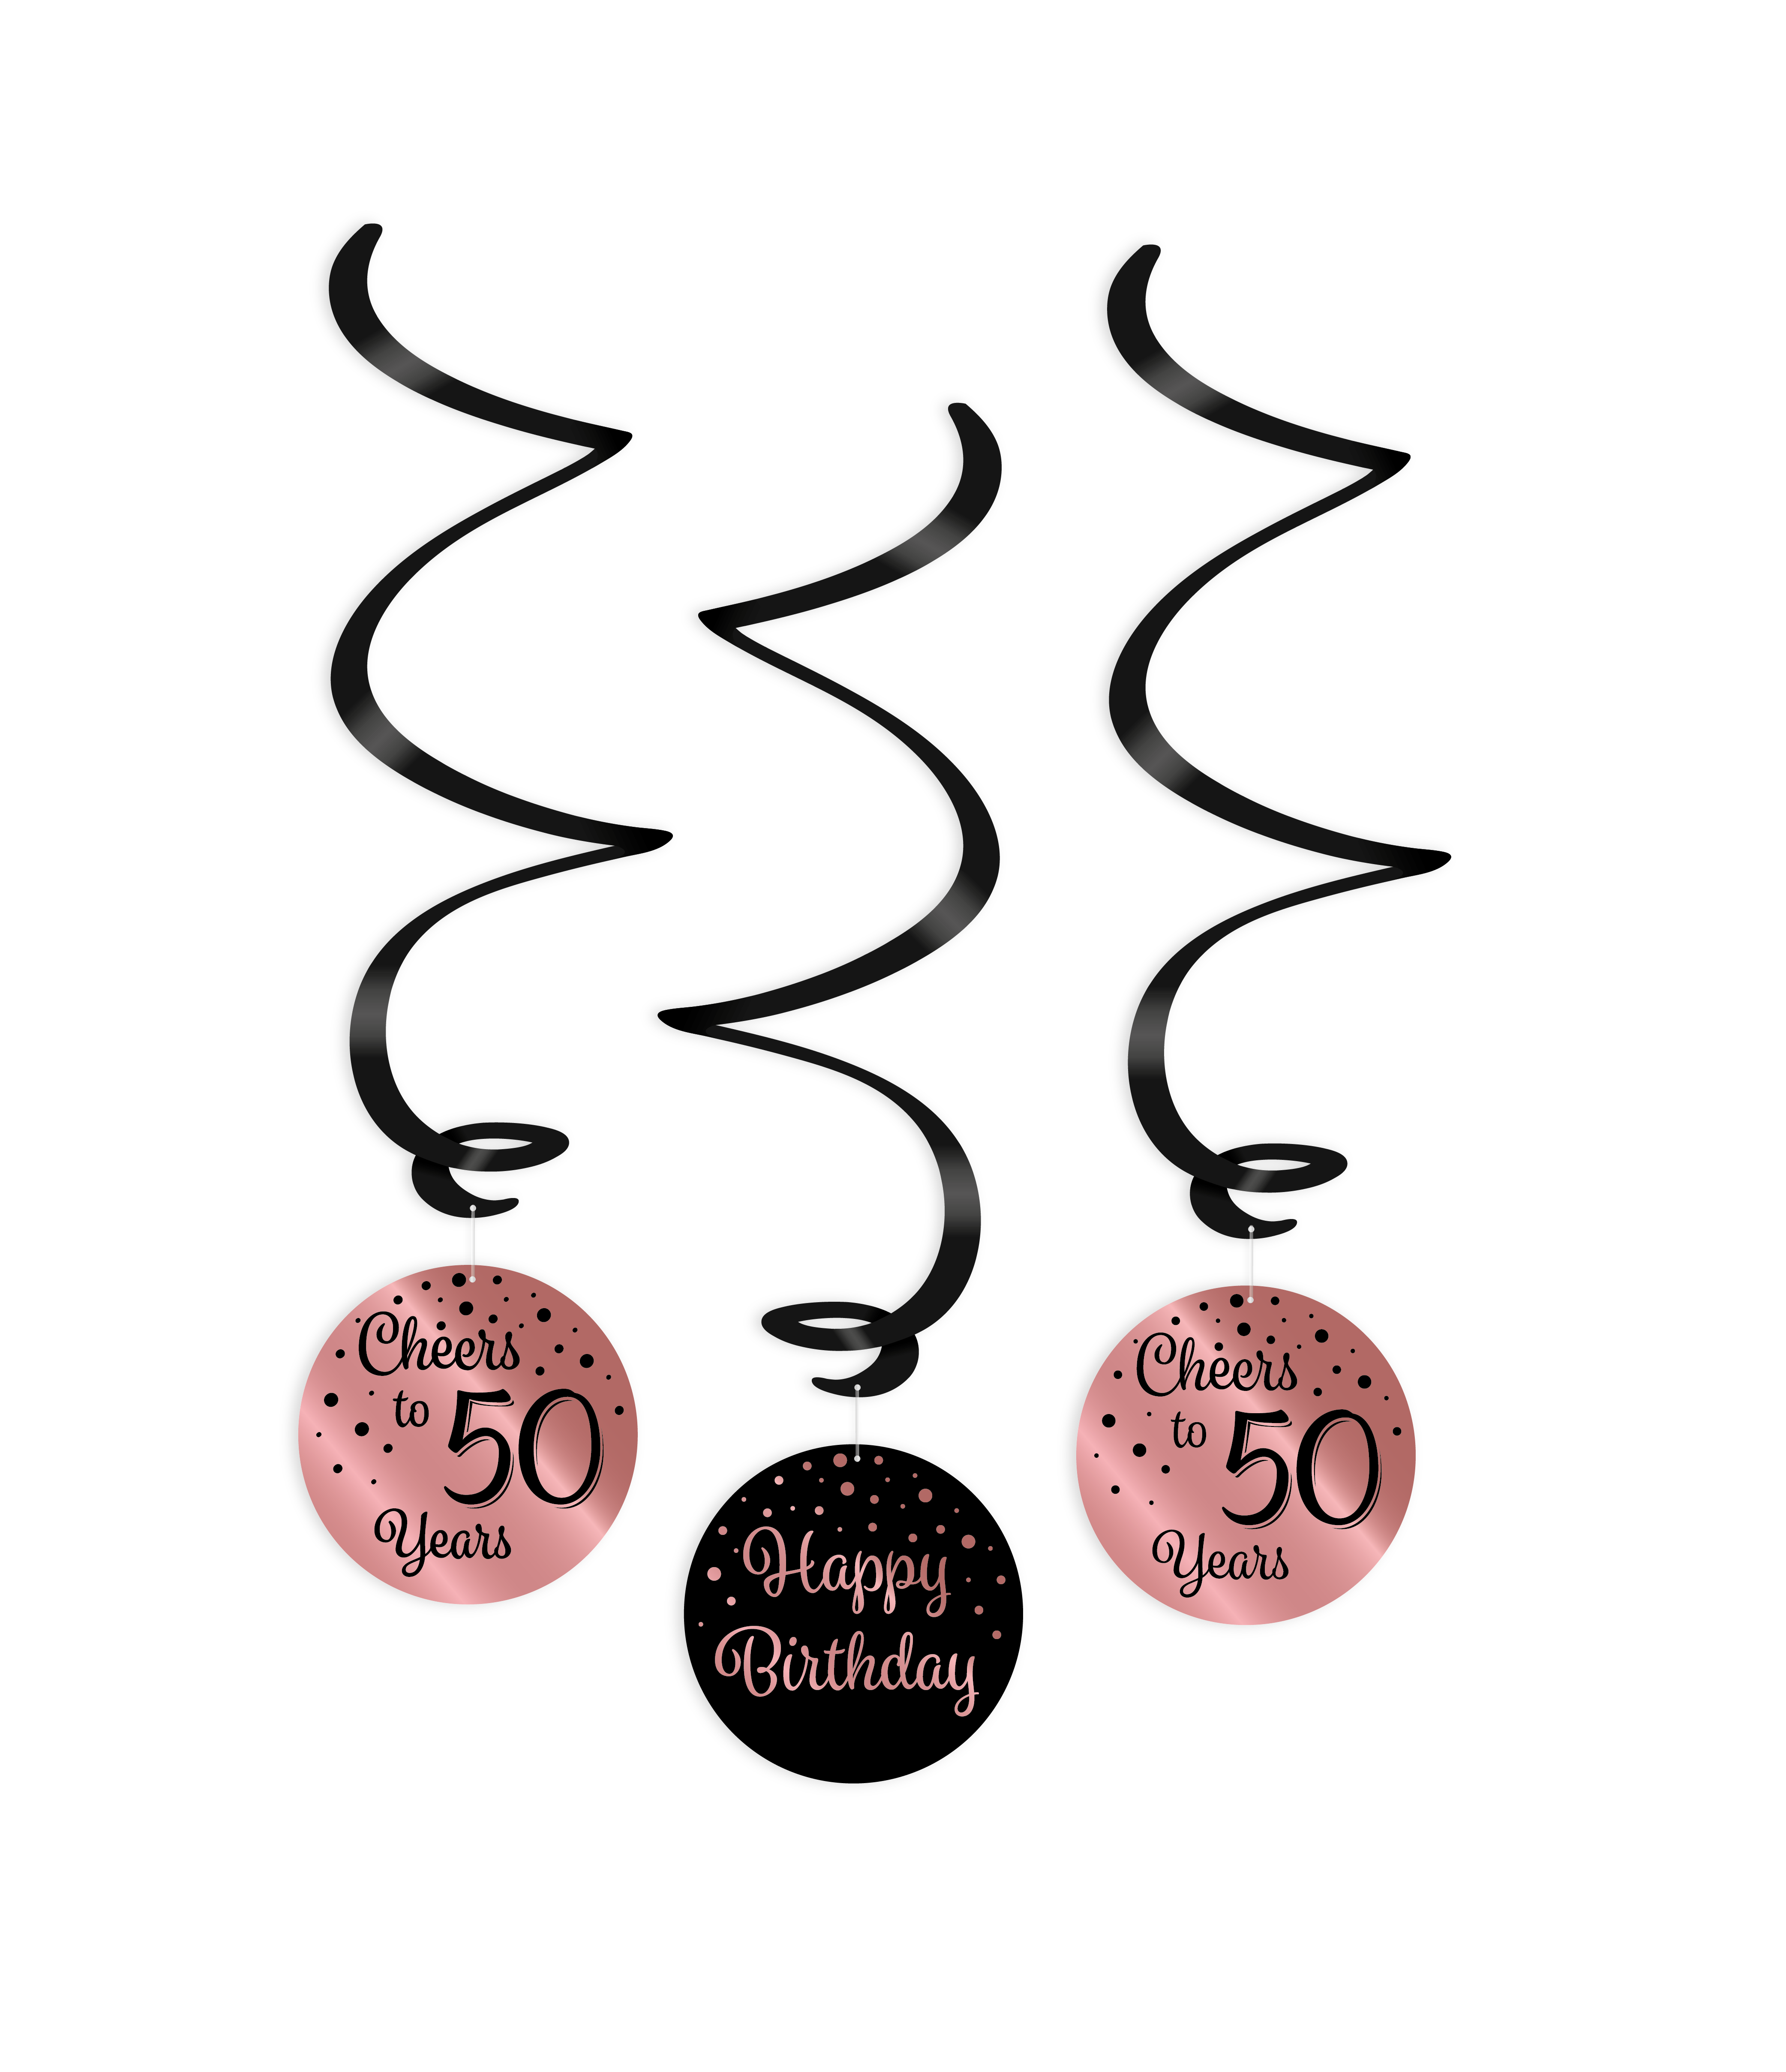 3st Hangdeco Roségoud/Zwart Cheers to 50 Years